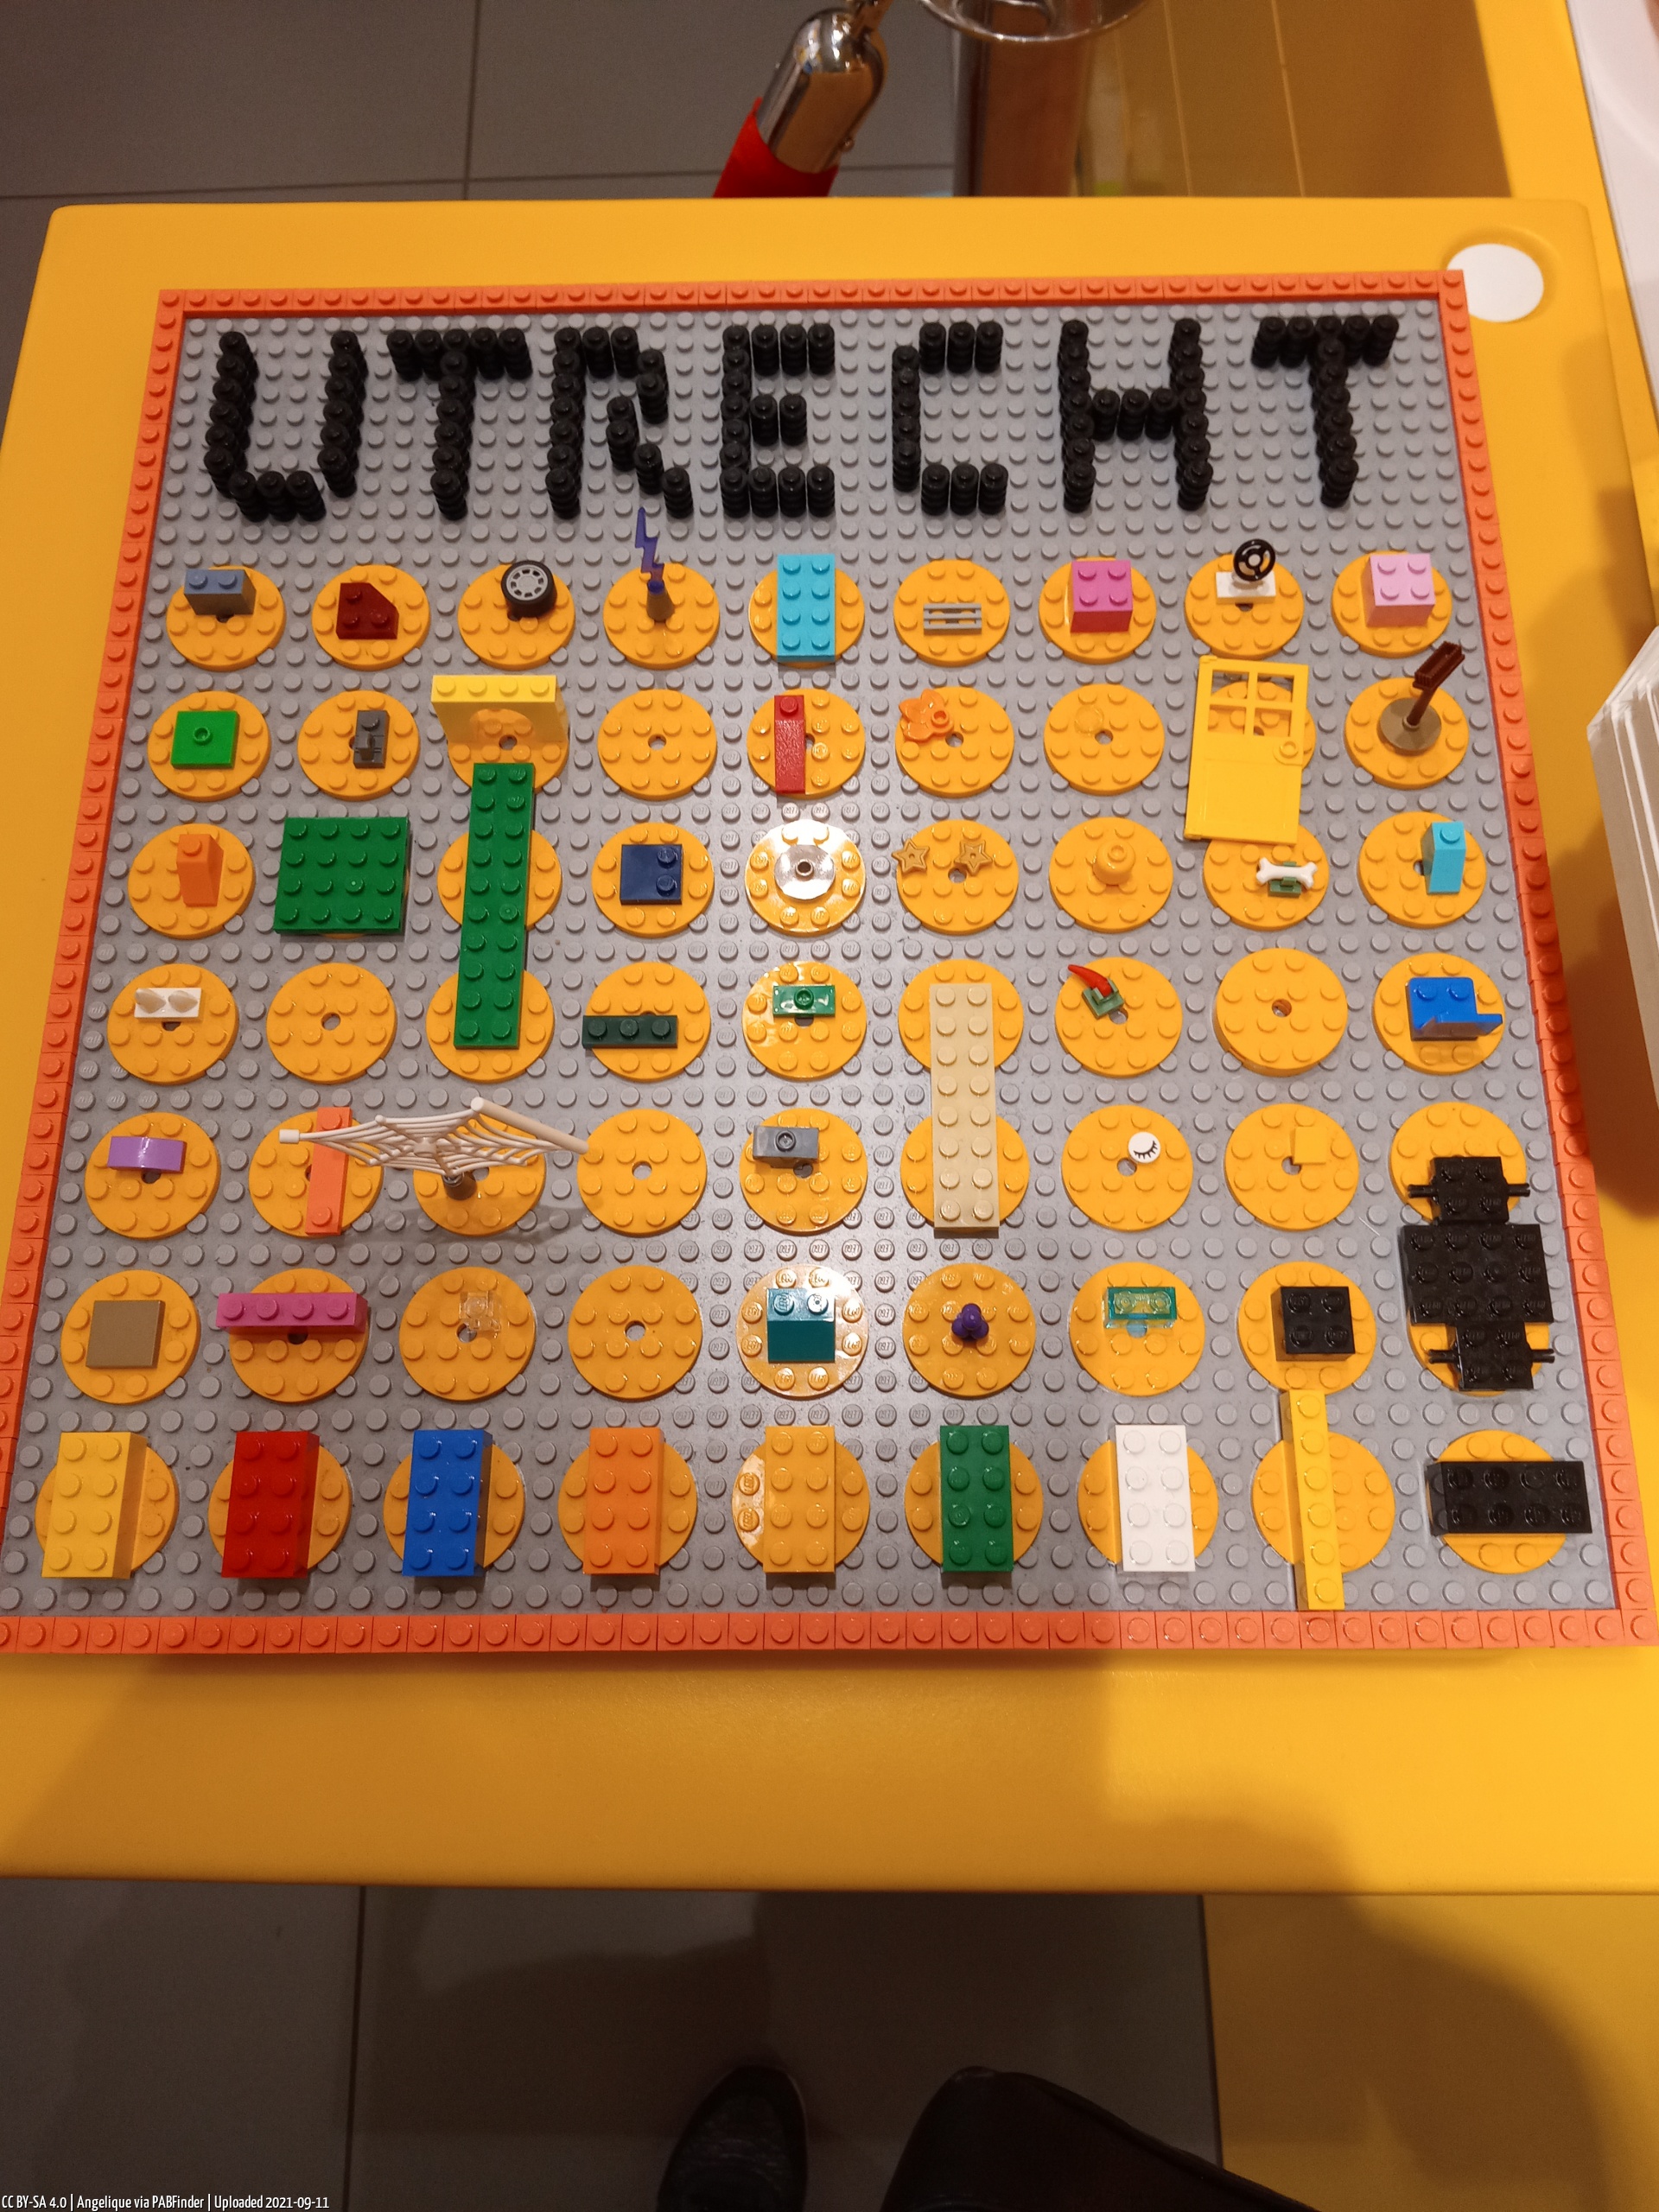 Pick a Brick Utrecht (Angelique, 9/11/21, 1:47:22 PM)